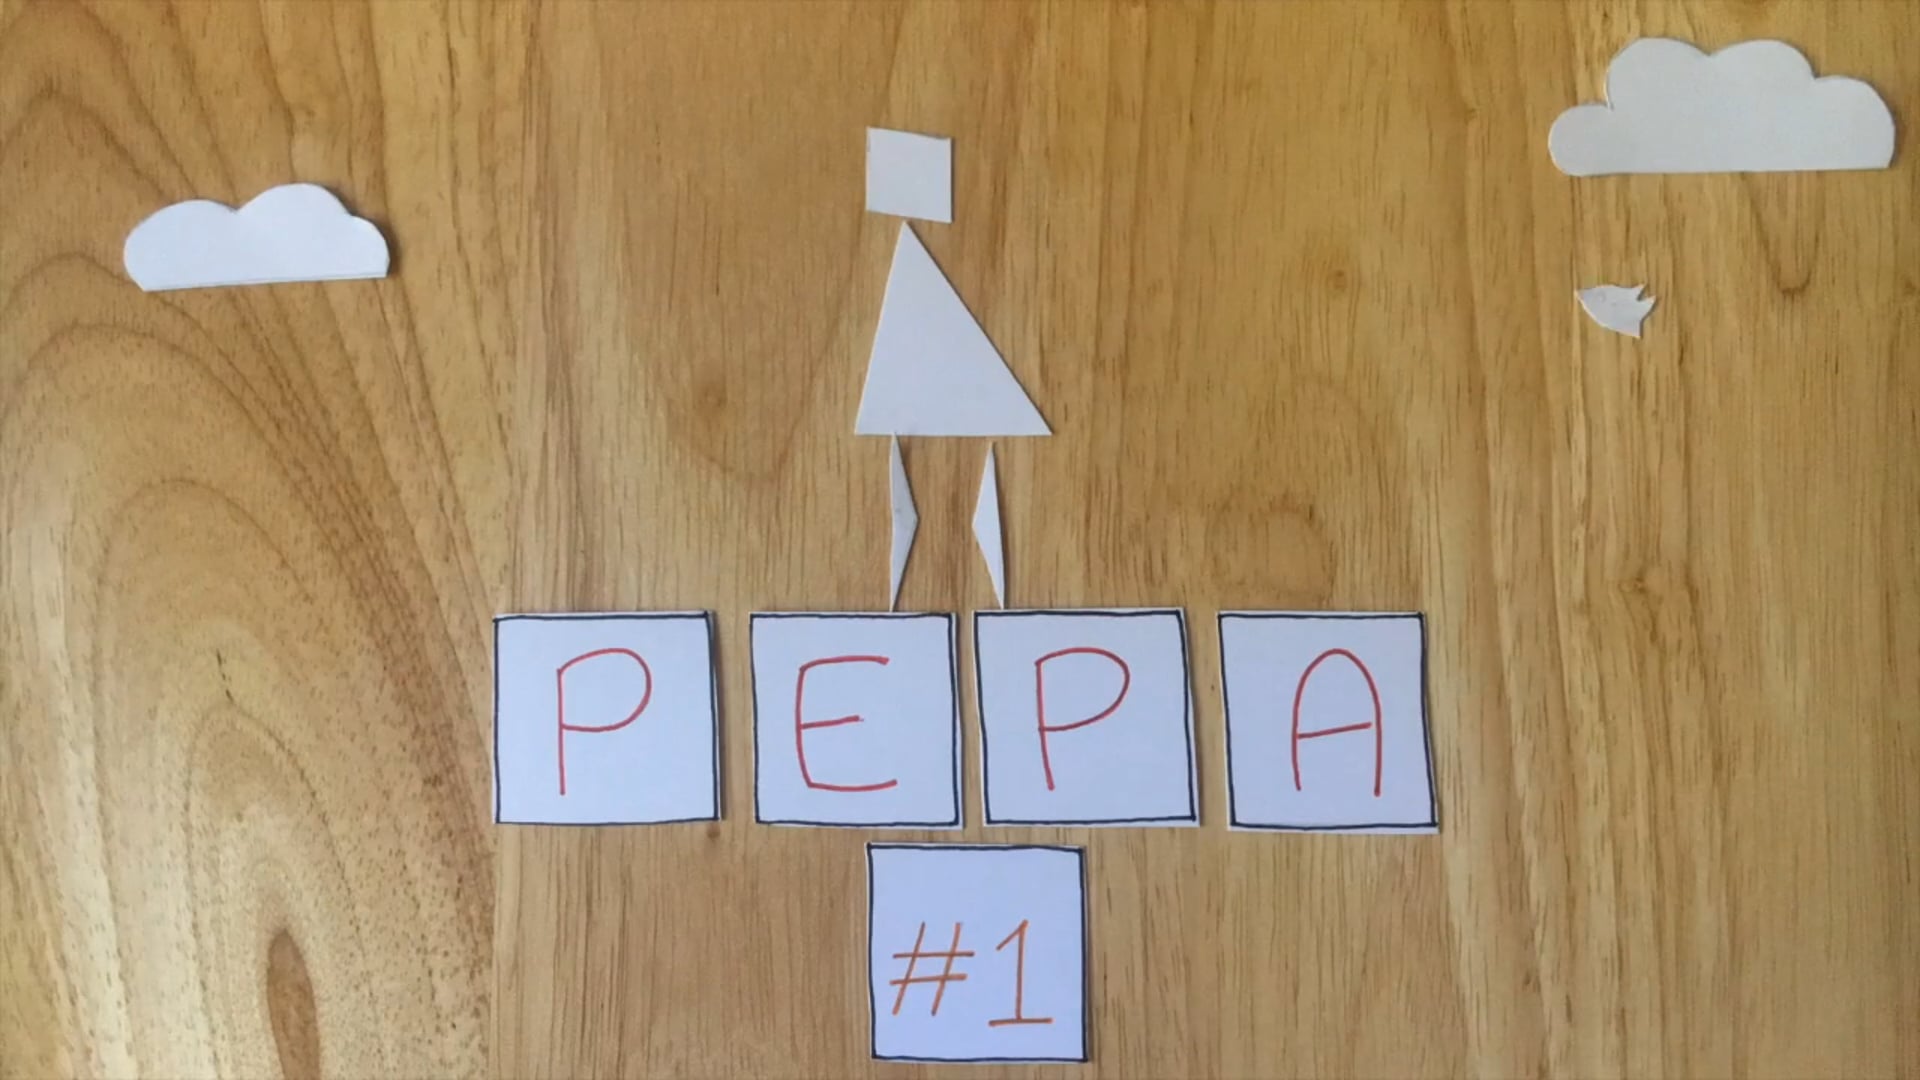 Pepa #1